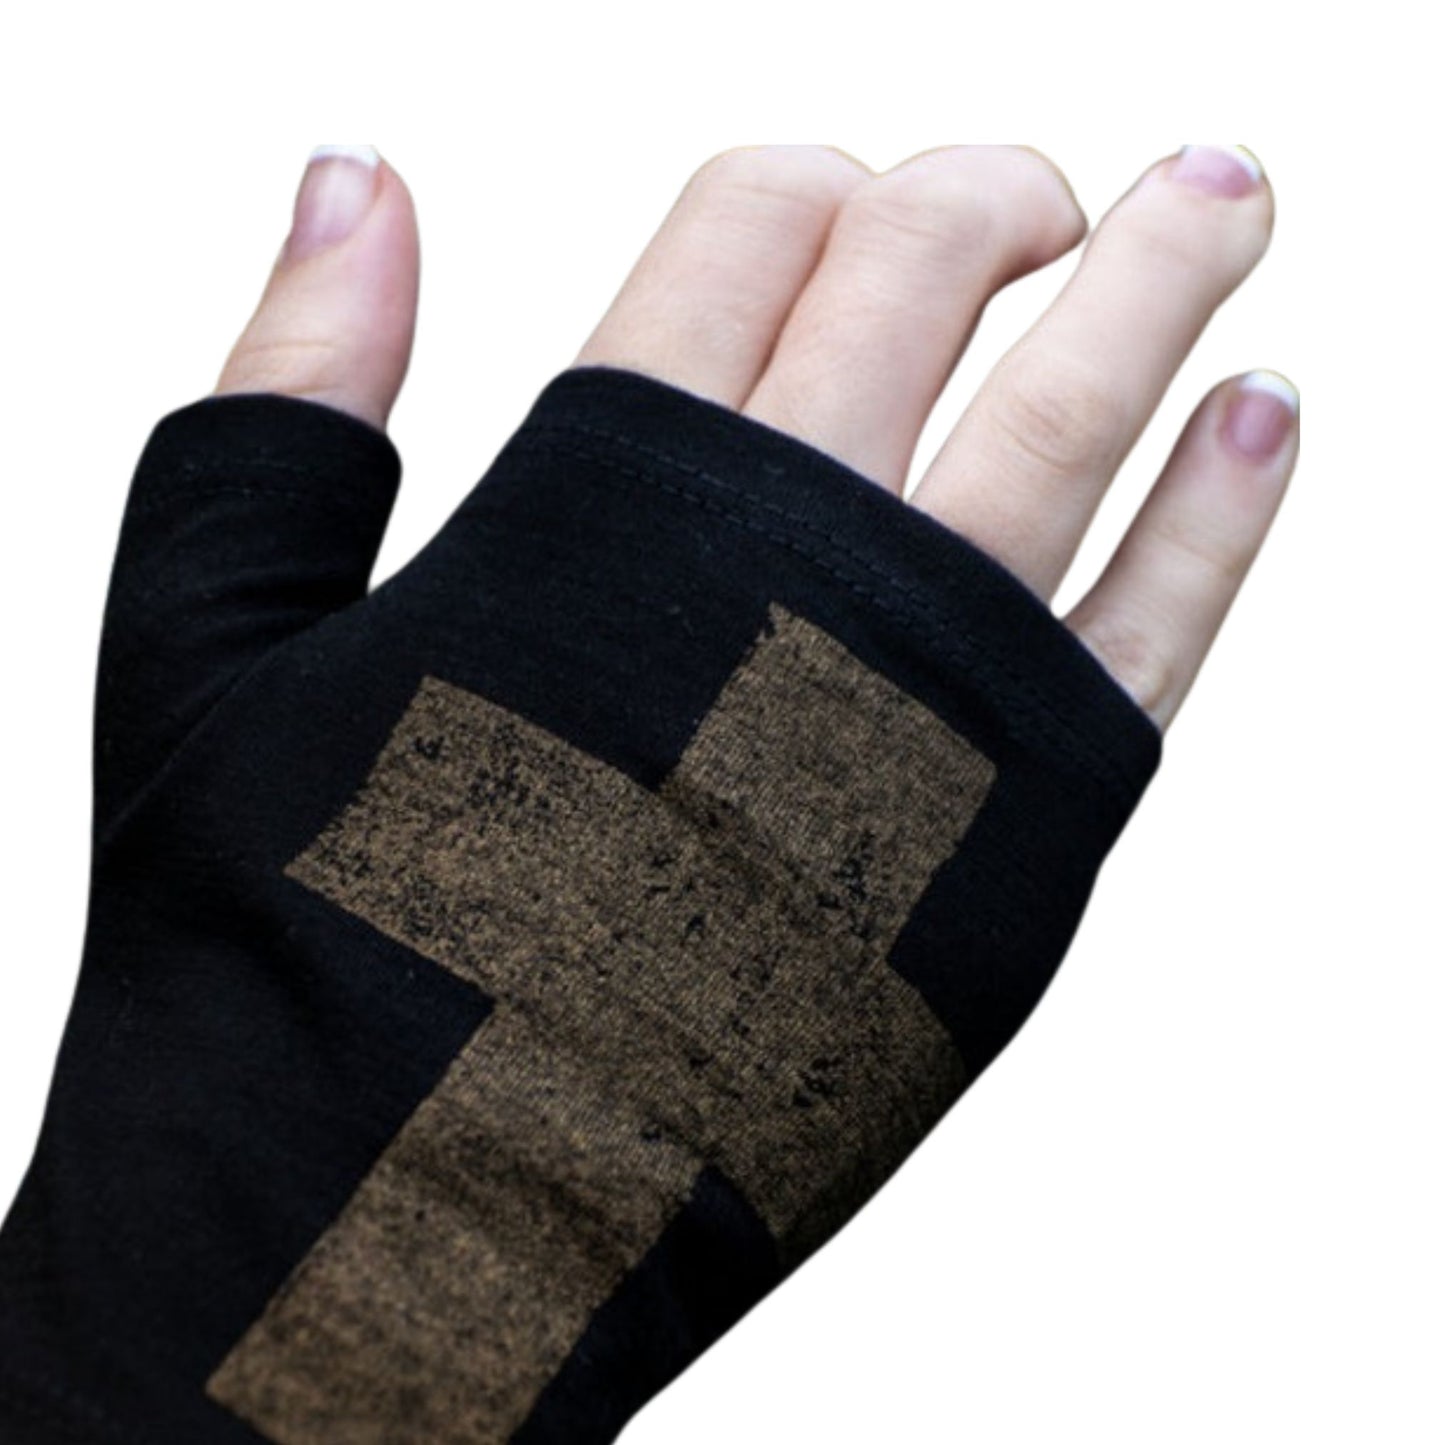 Black merino fingerless glove with bronze cross.